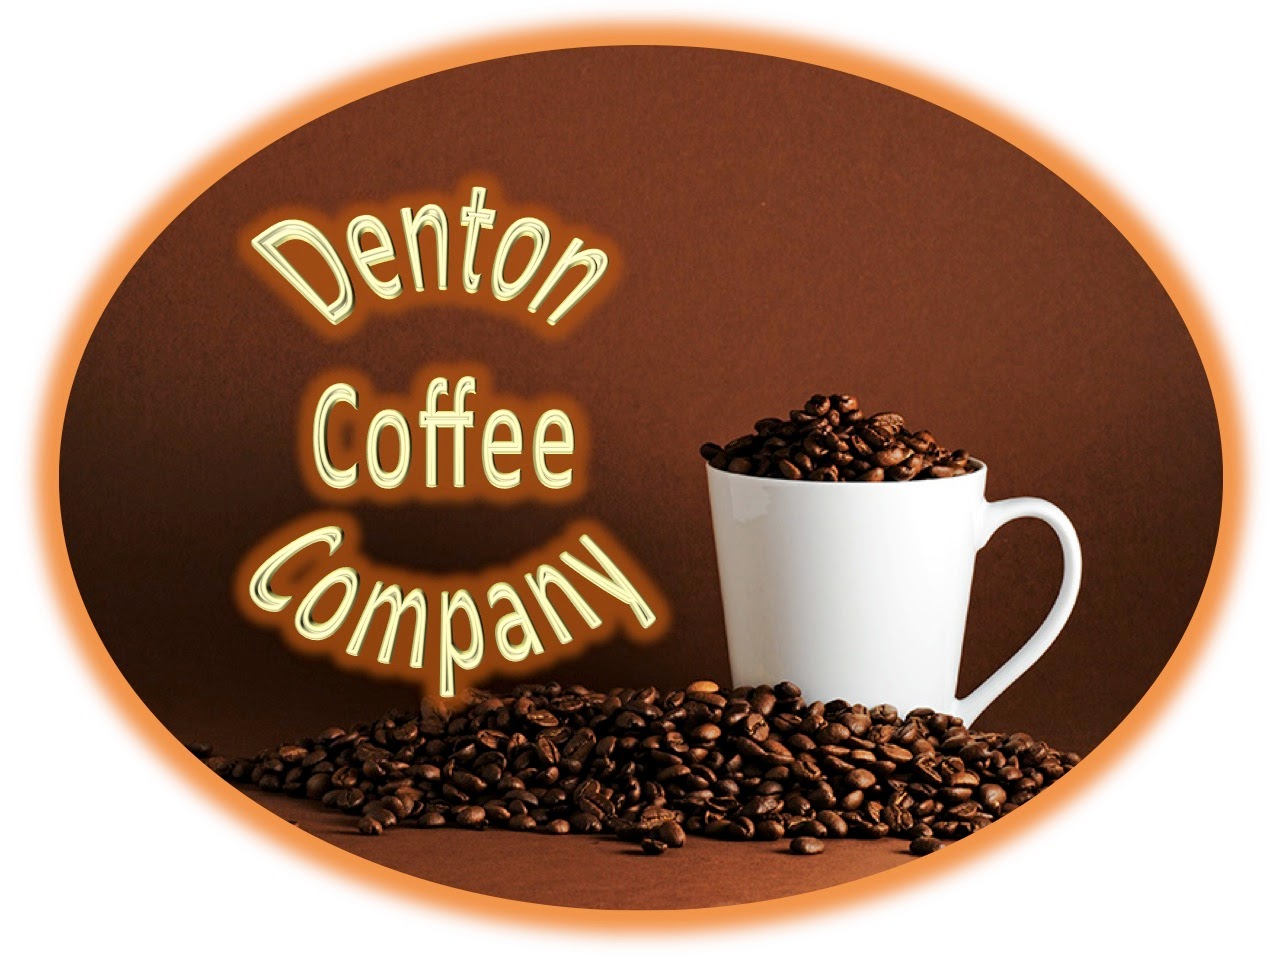 Denton Coffee Co.